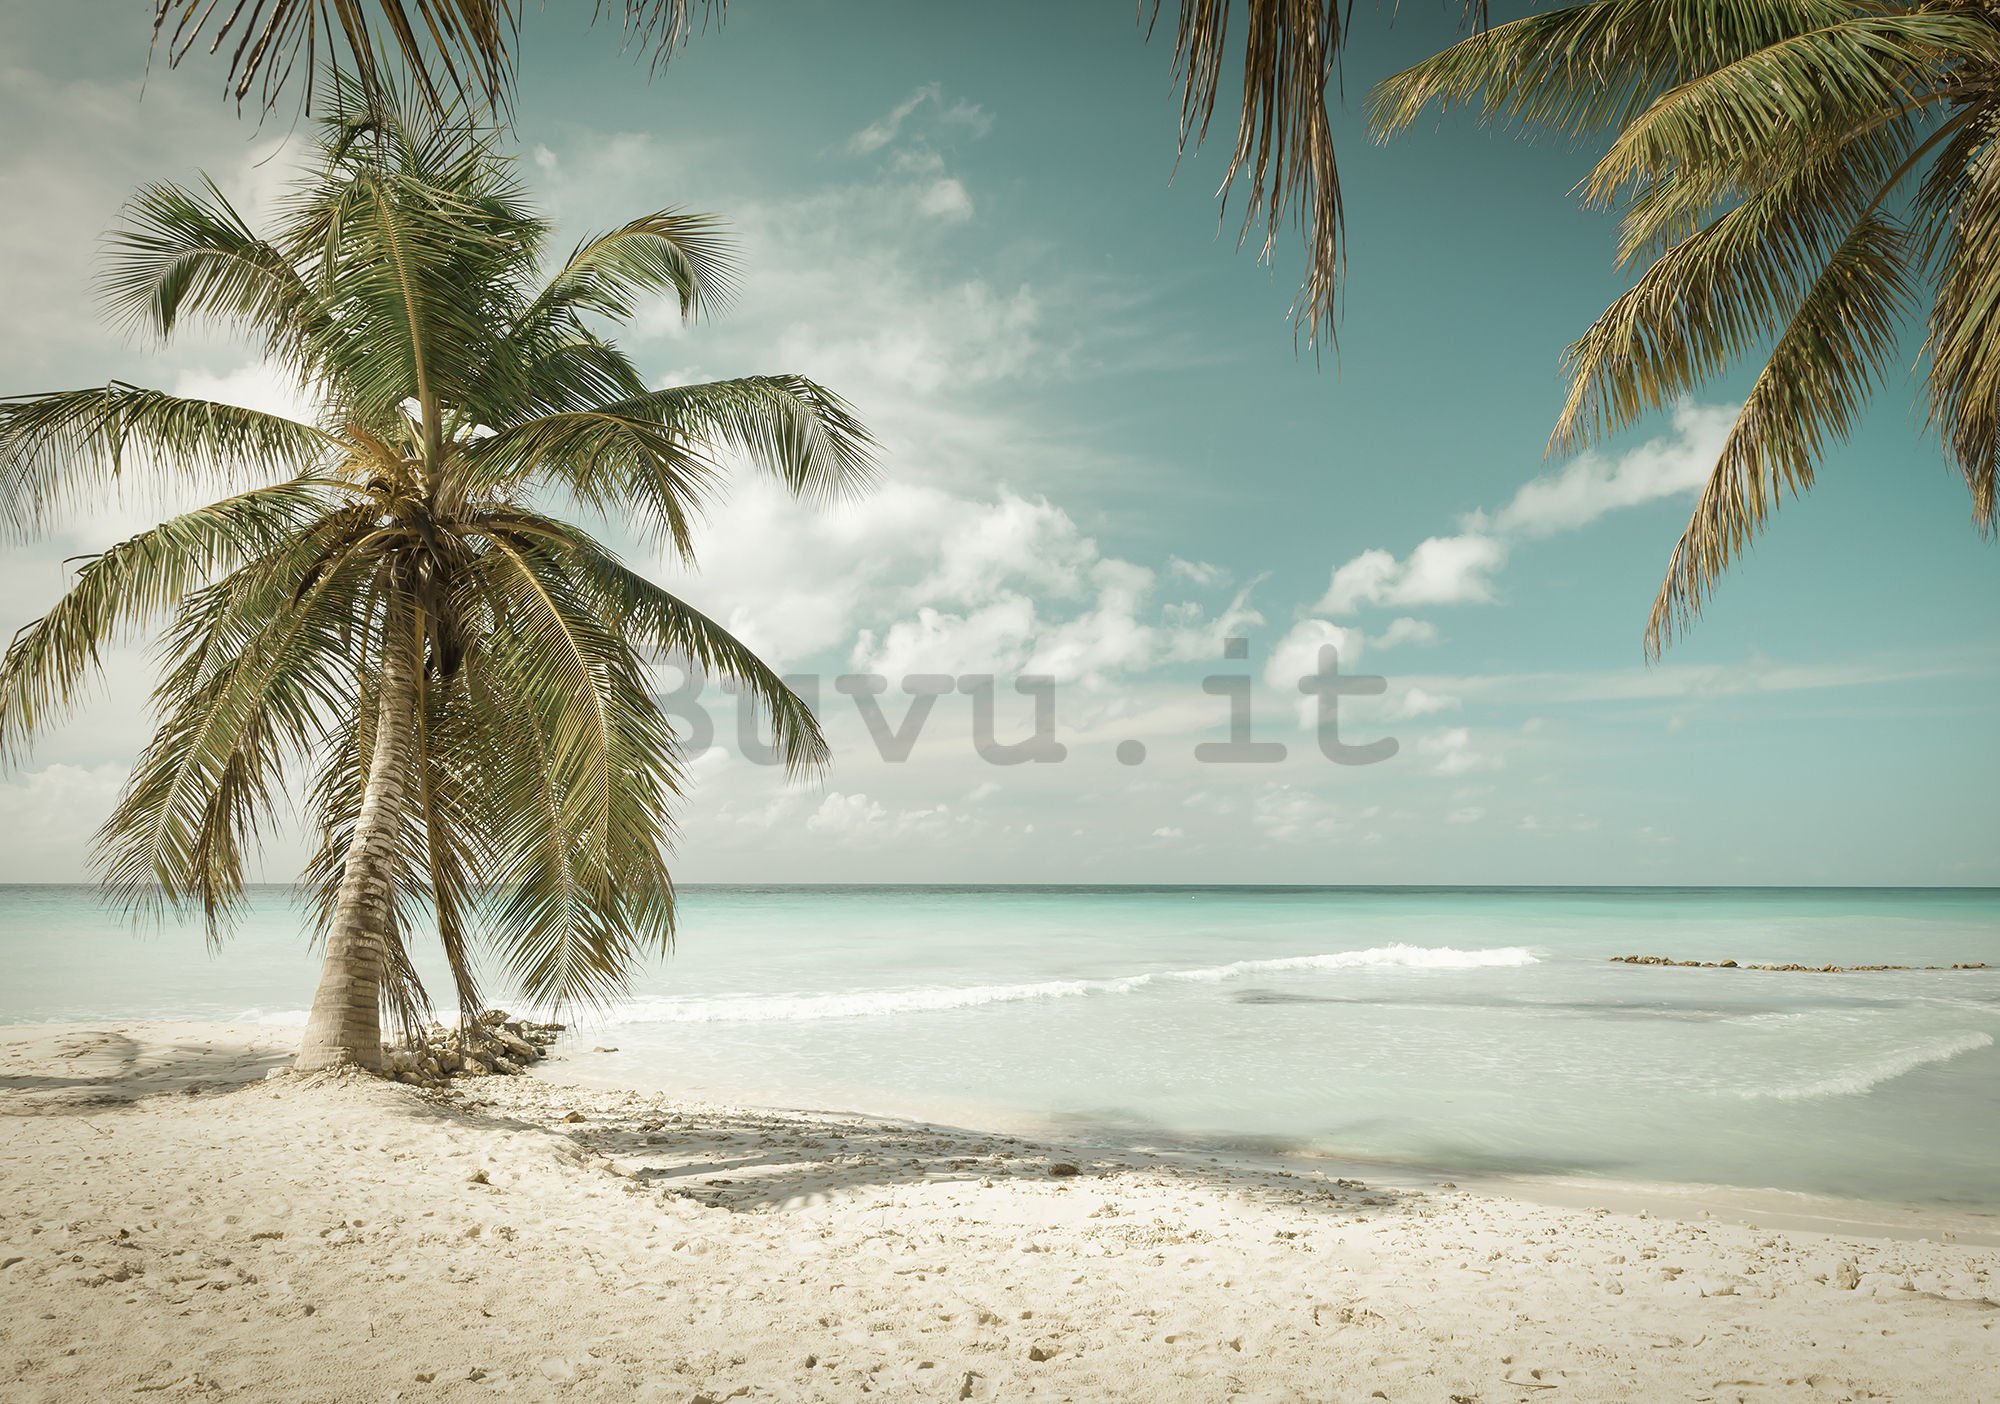 Fotomurale in TNT: Le palme sul mare - 416x254 cm